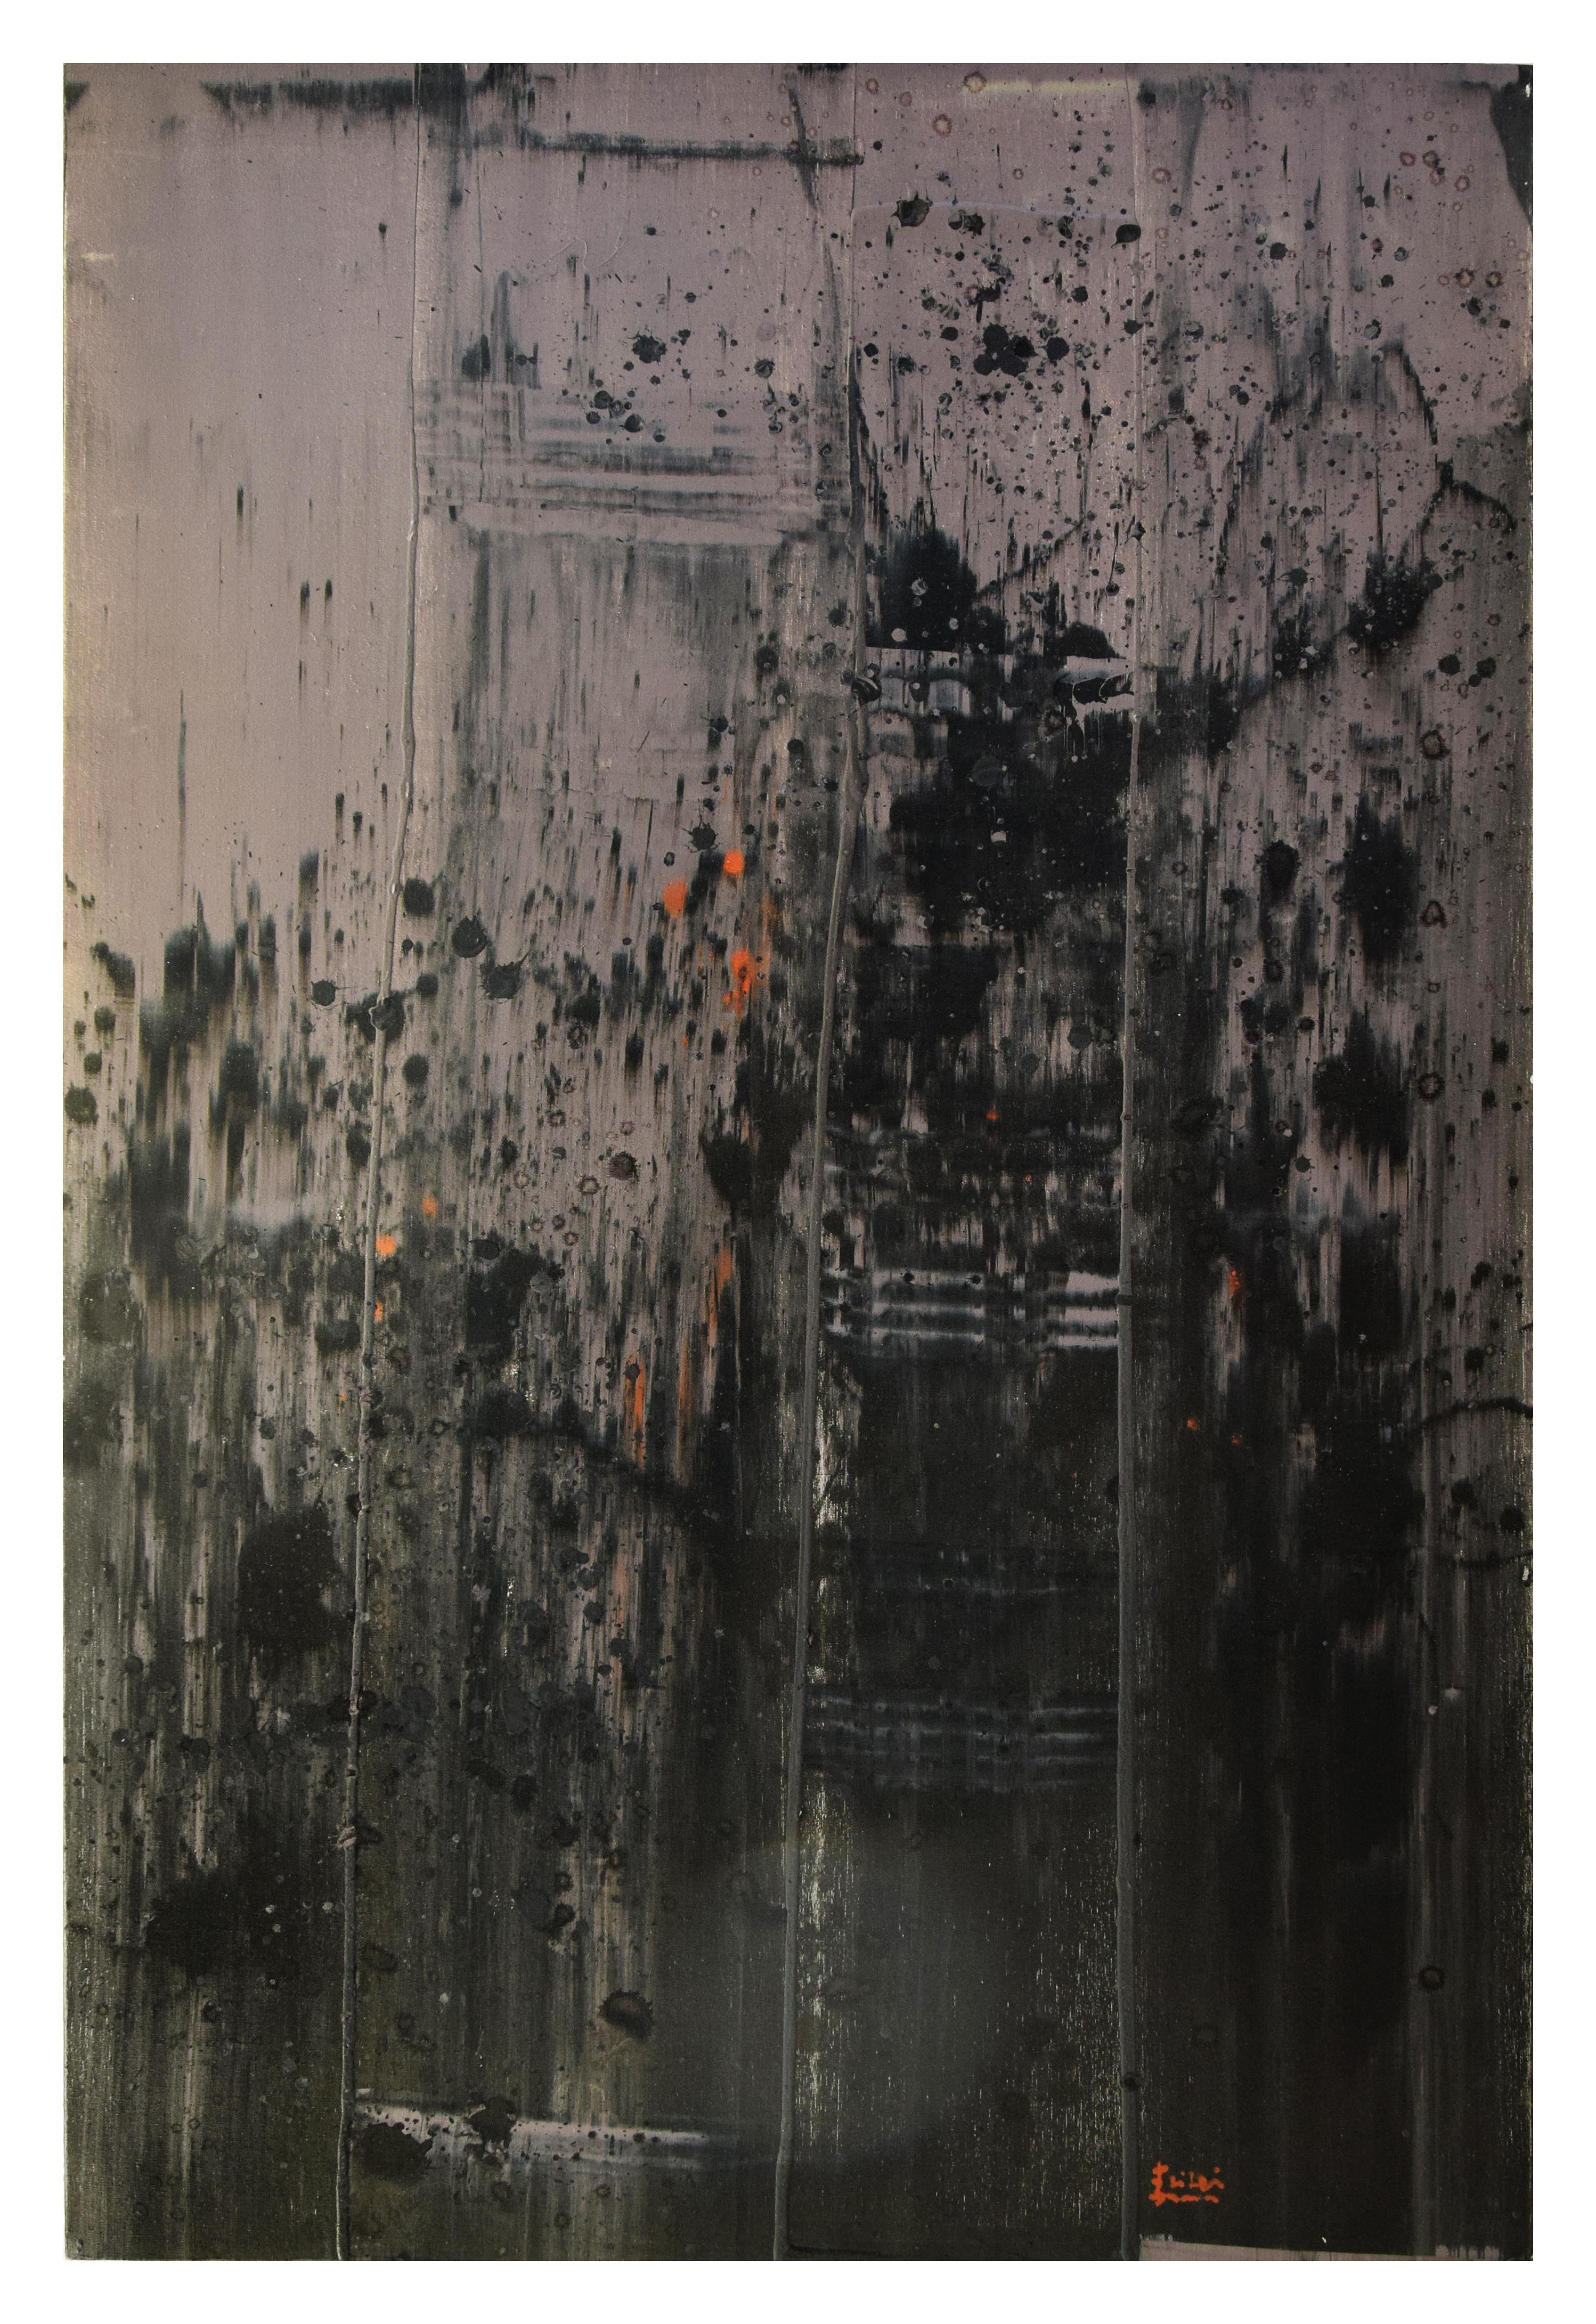 Grigio Naturale 05 est une peinture abstraite hypnotique réalisée par l'artiste contemporain Li Lei en 2007.

Cette œuvre d'art originale verticale représente une composition abstraite dans différentes nuances de gris. Le coup de pinceau est